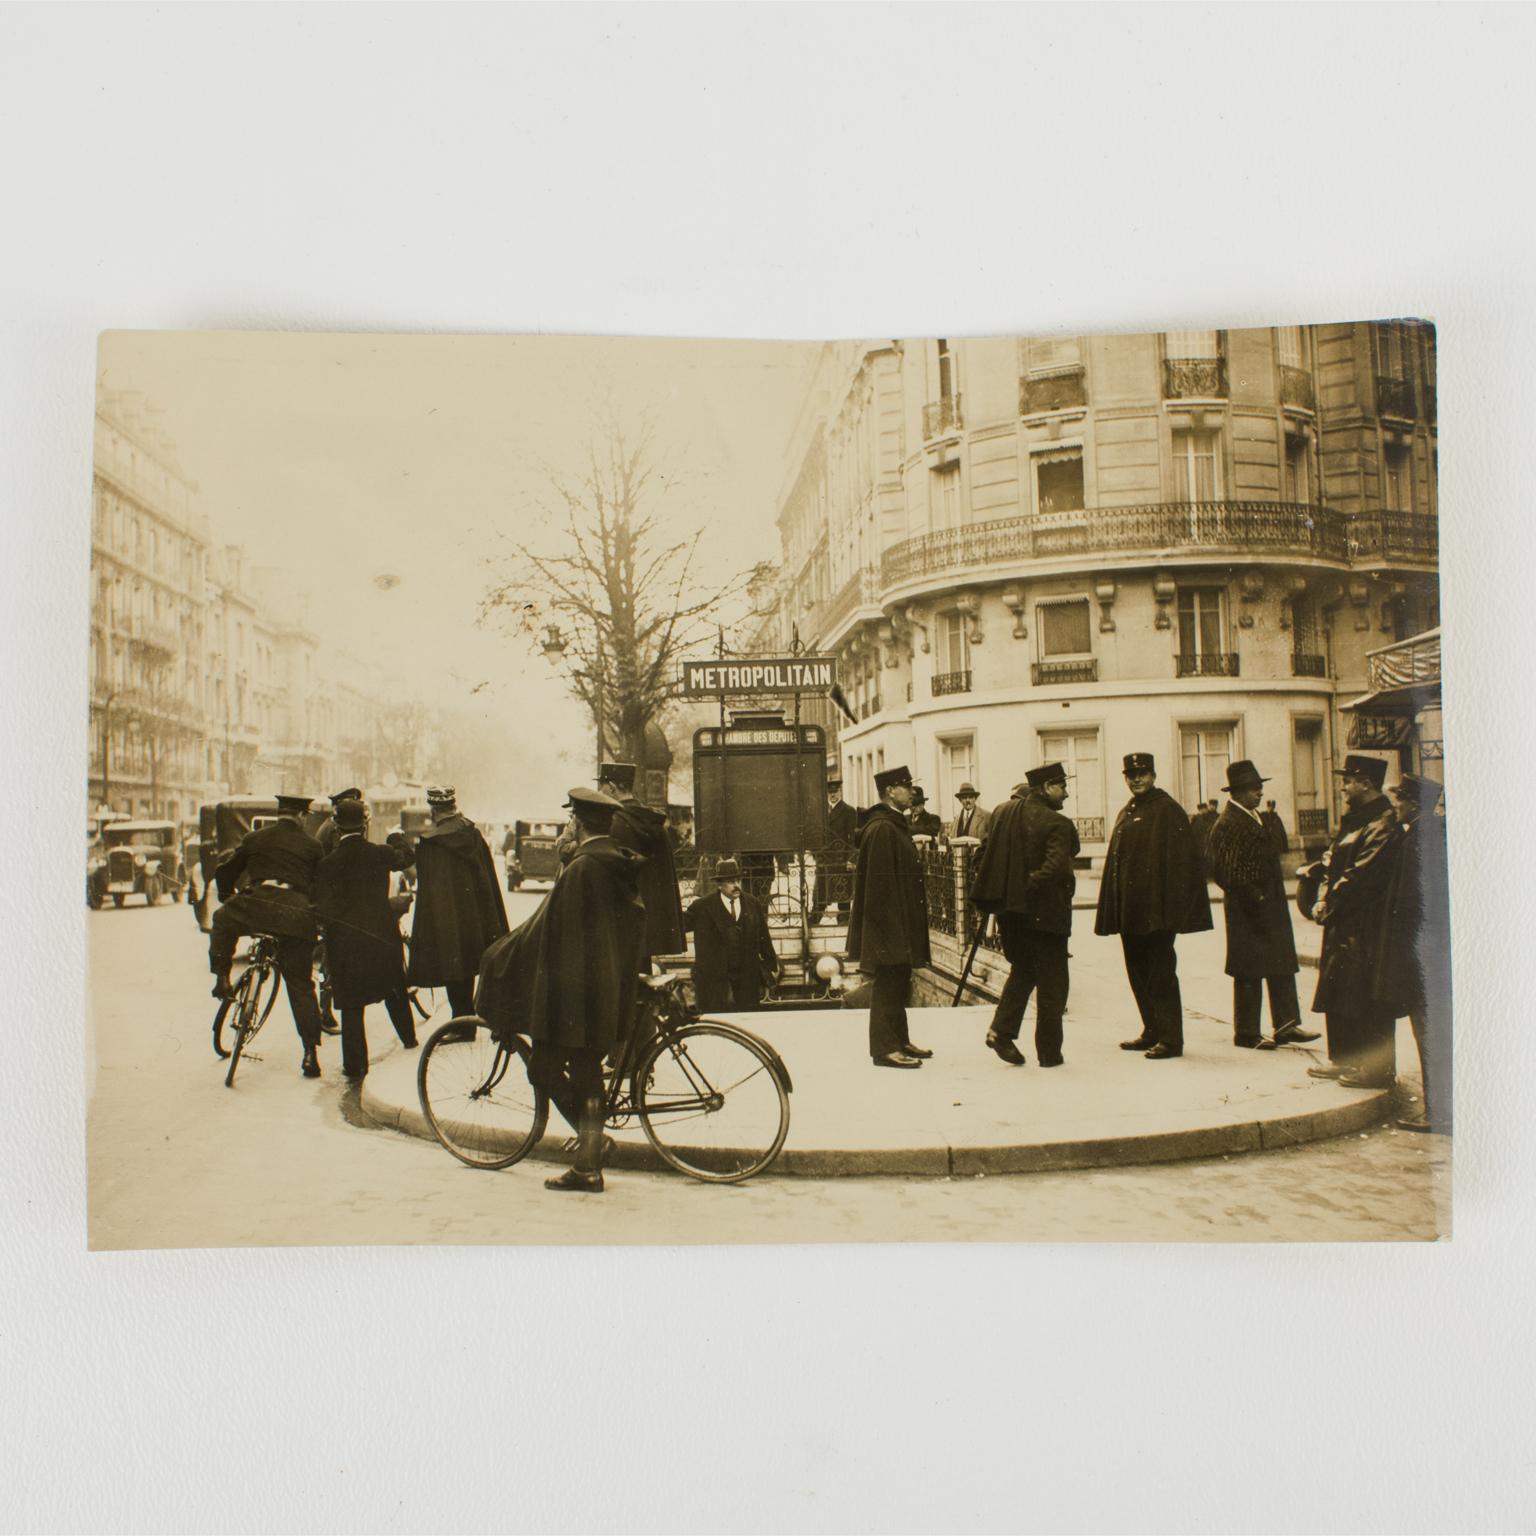 Polizisten in Paris, um 1930 – Silber-Gelatine-Schwarz-Weiß-Fotografie (Art déco), Photograph, von Press Agency Keystone View Co.